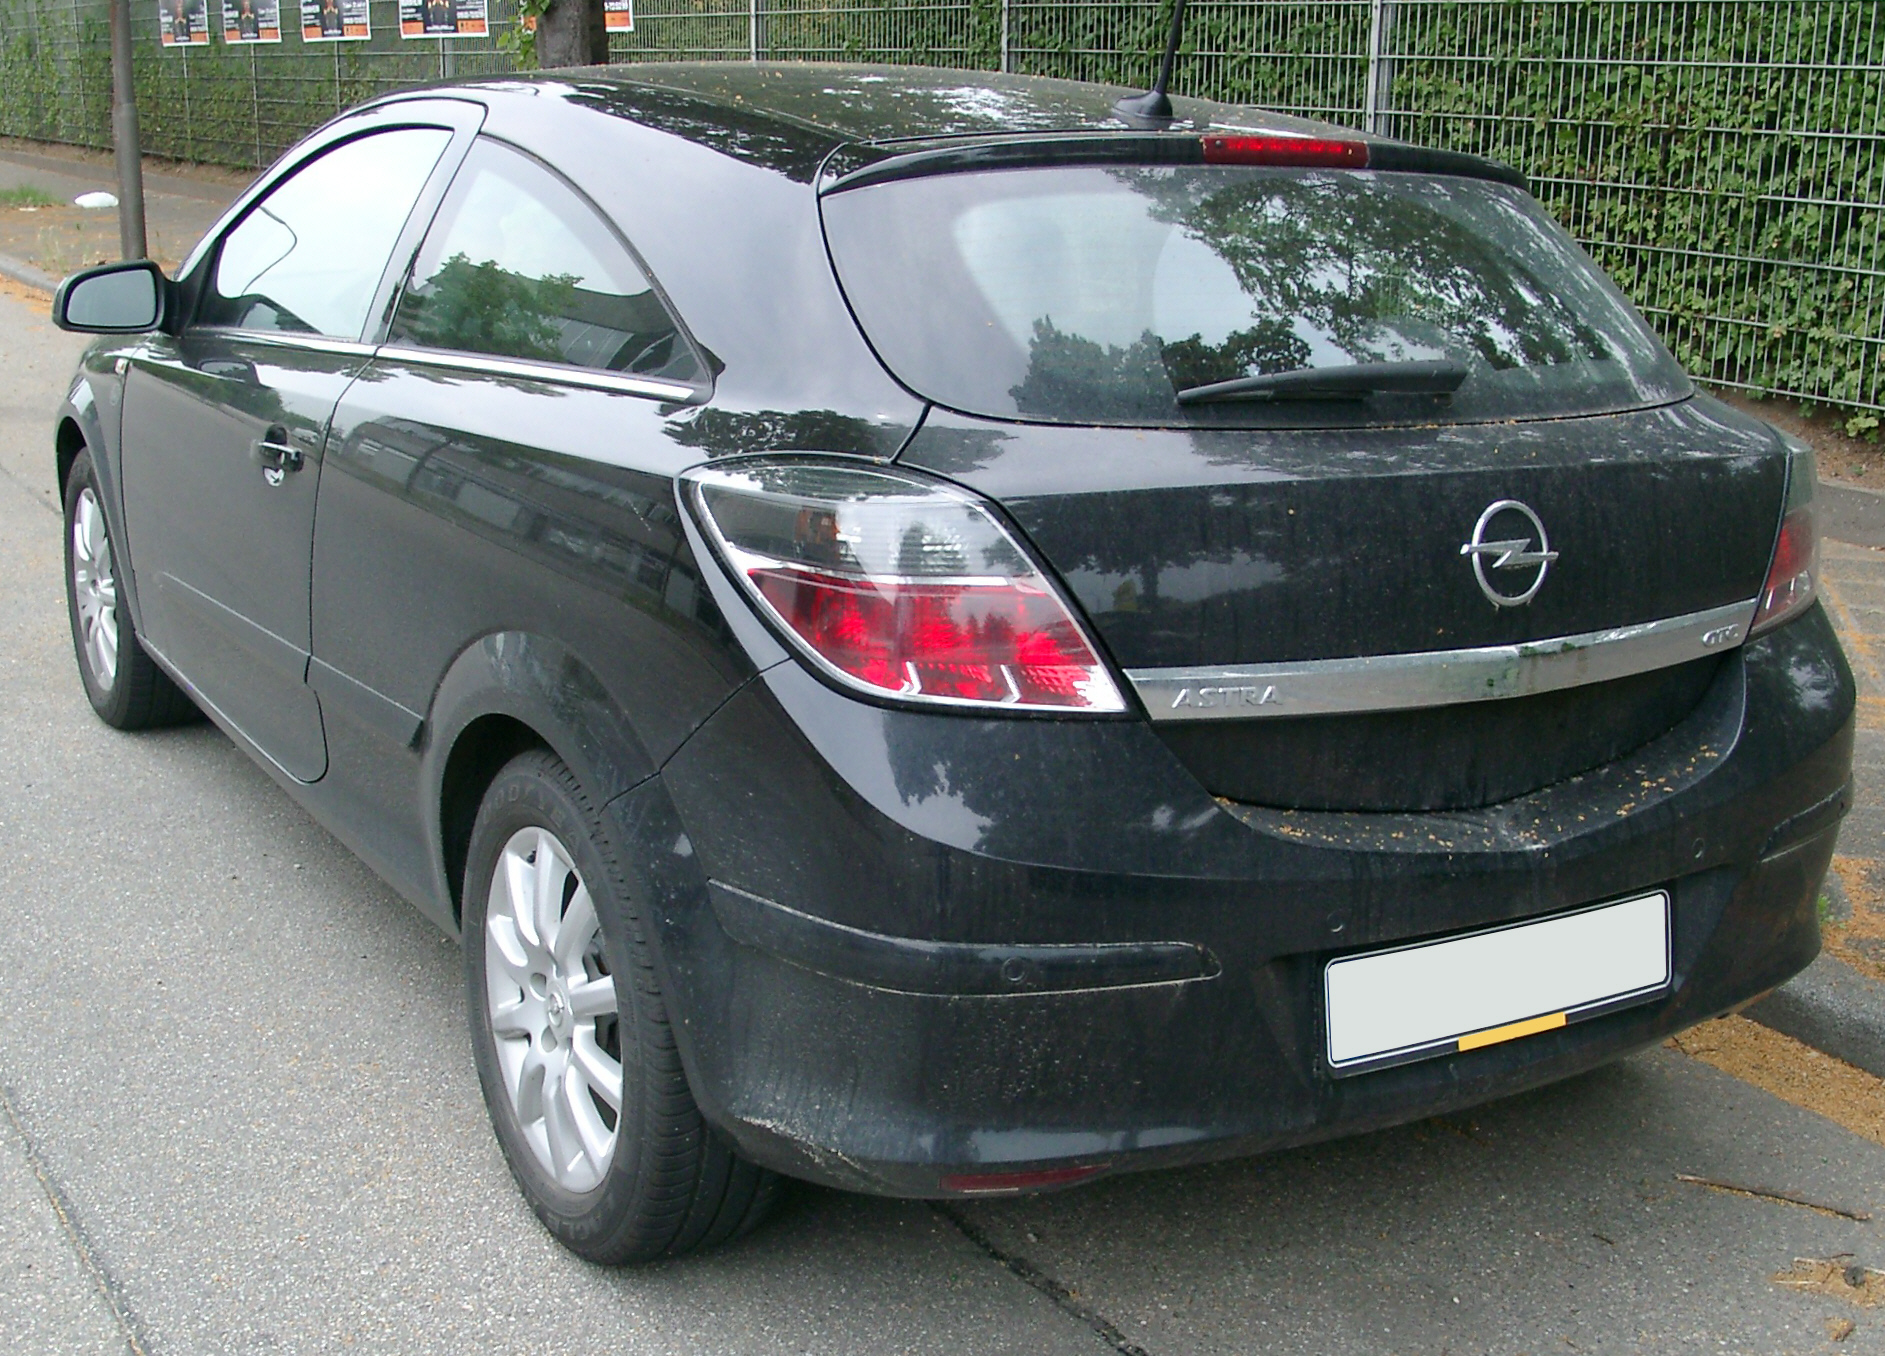 Dossier: Opel Astra GTC arrière 20070609.jpg